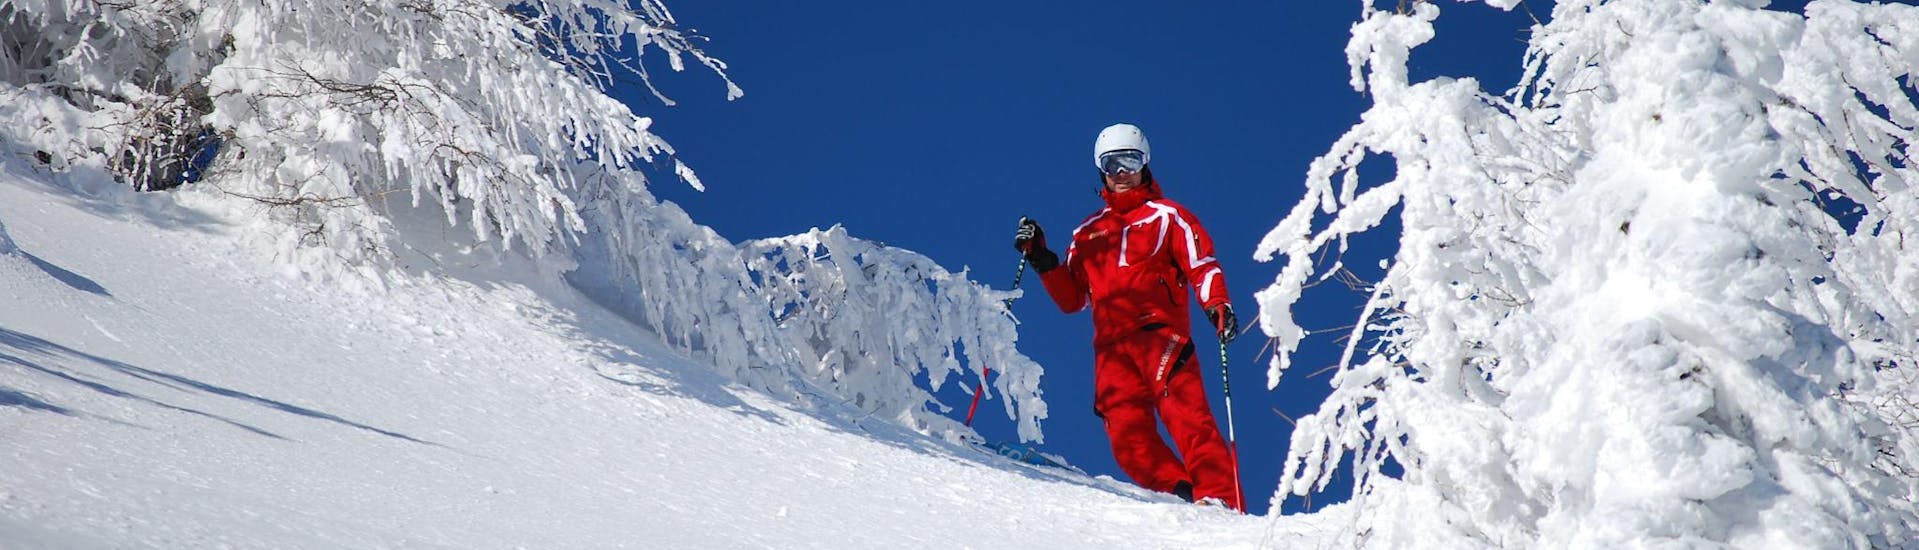 Skilessen voor Volwassenen - Beginners.